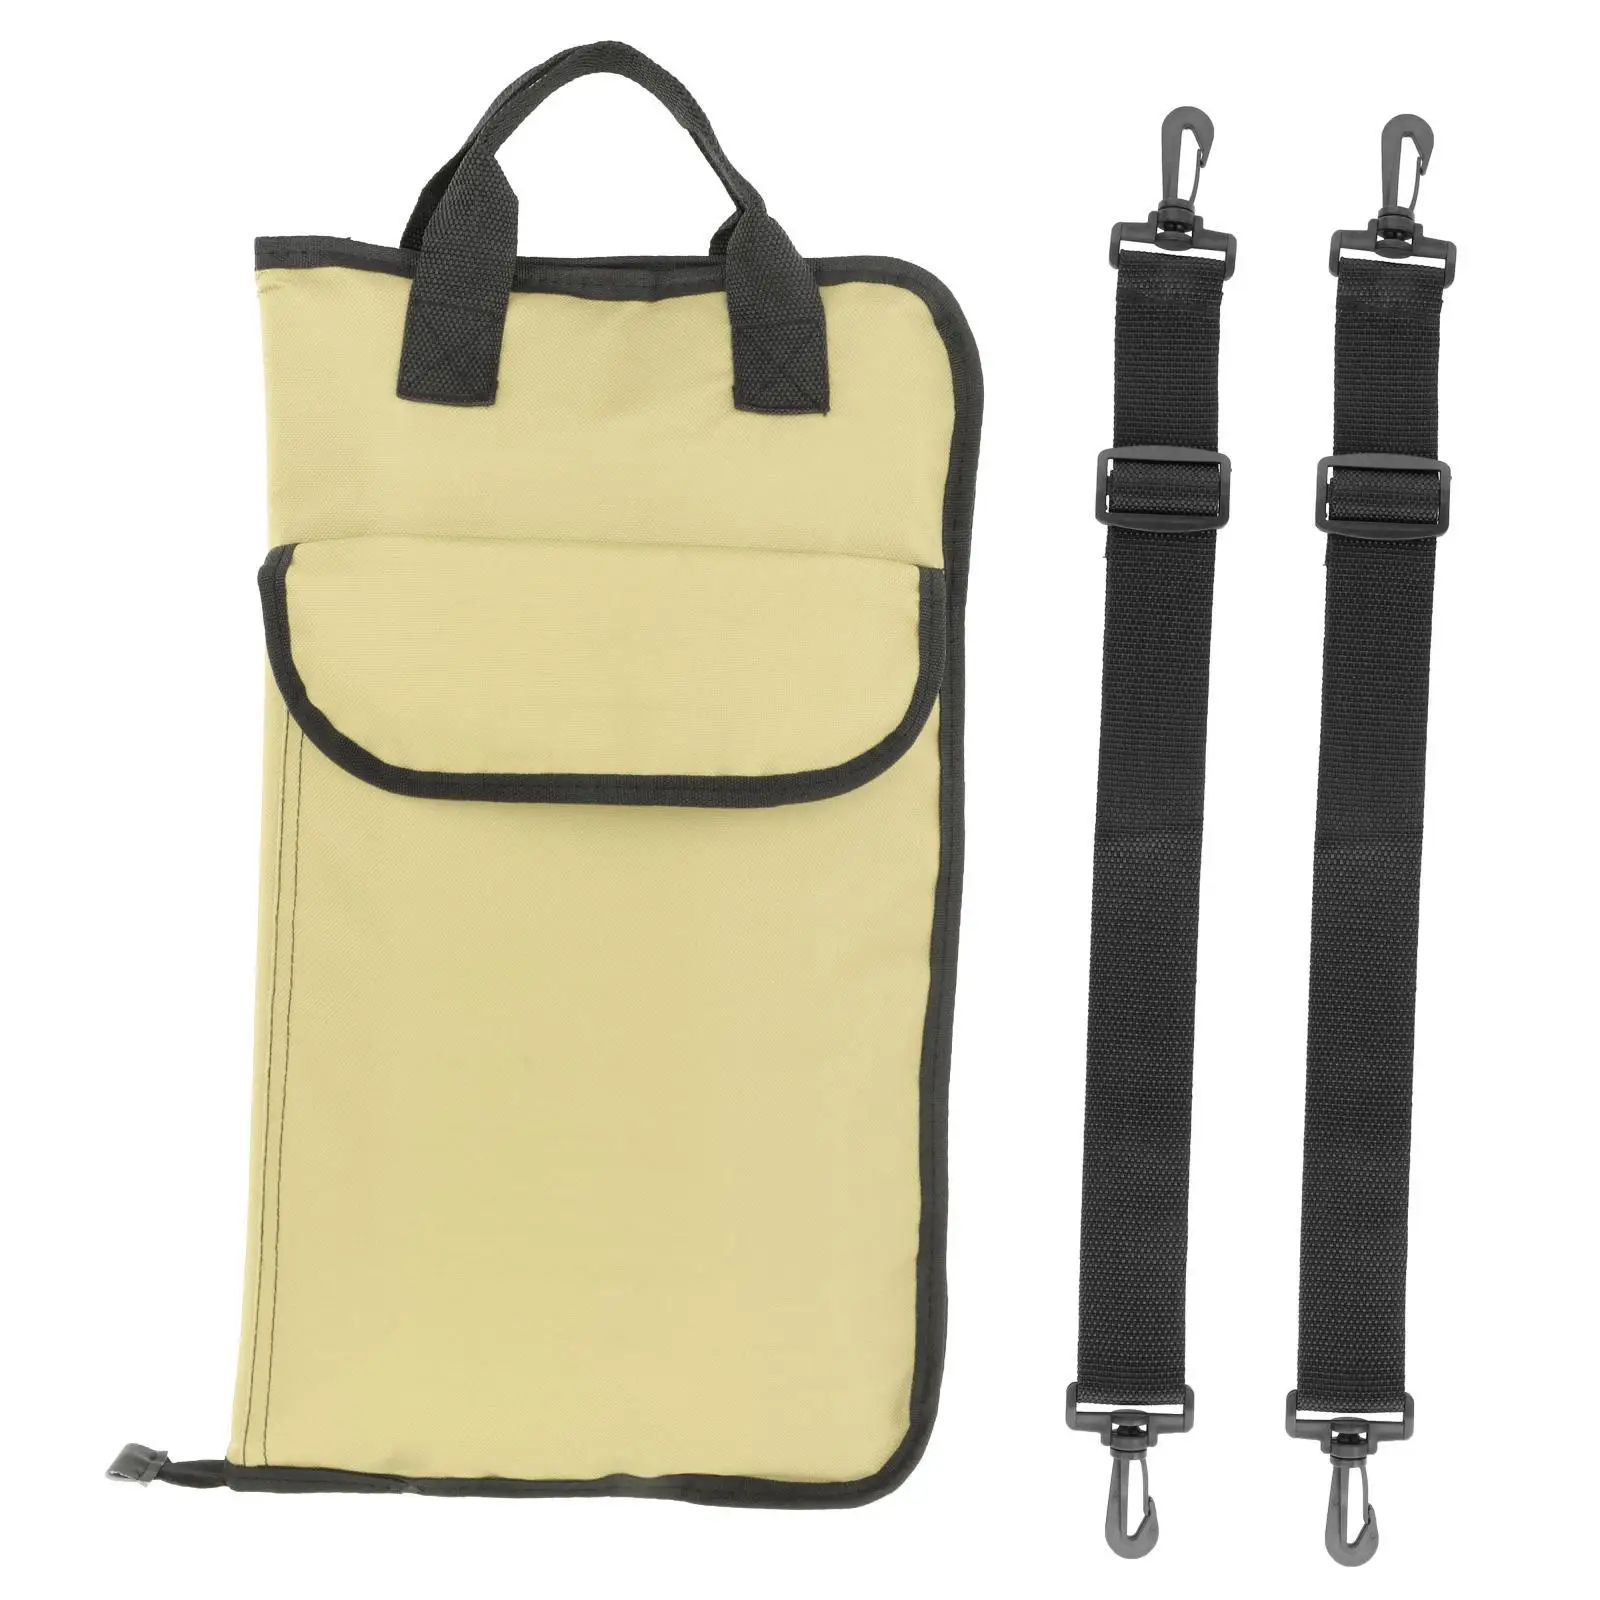  Bag Holder Case,  Holder  Storage Hanging Bag  Portable Handbag